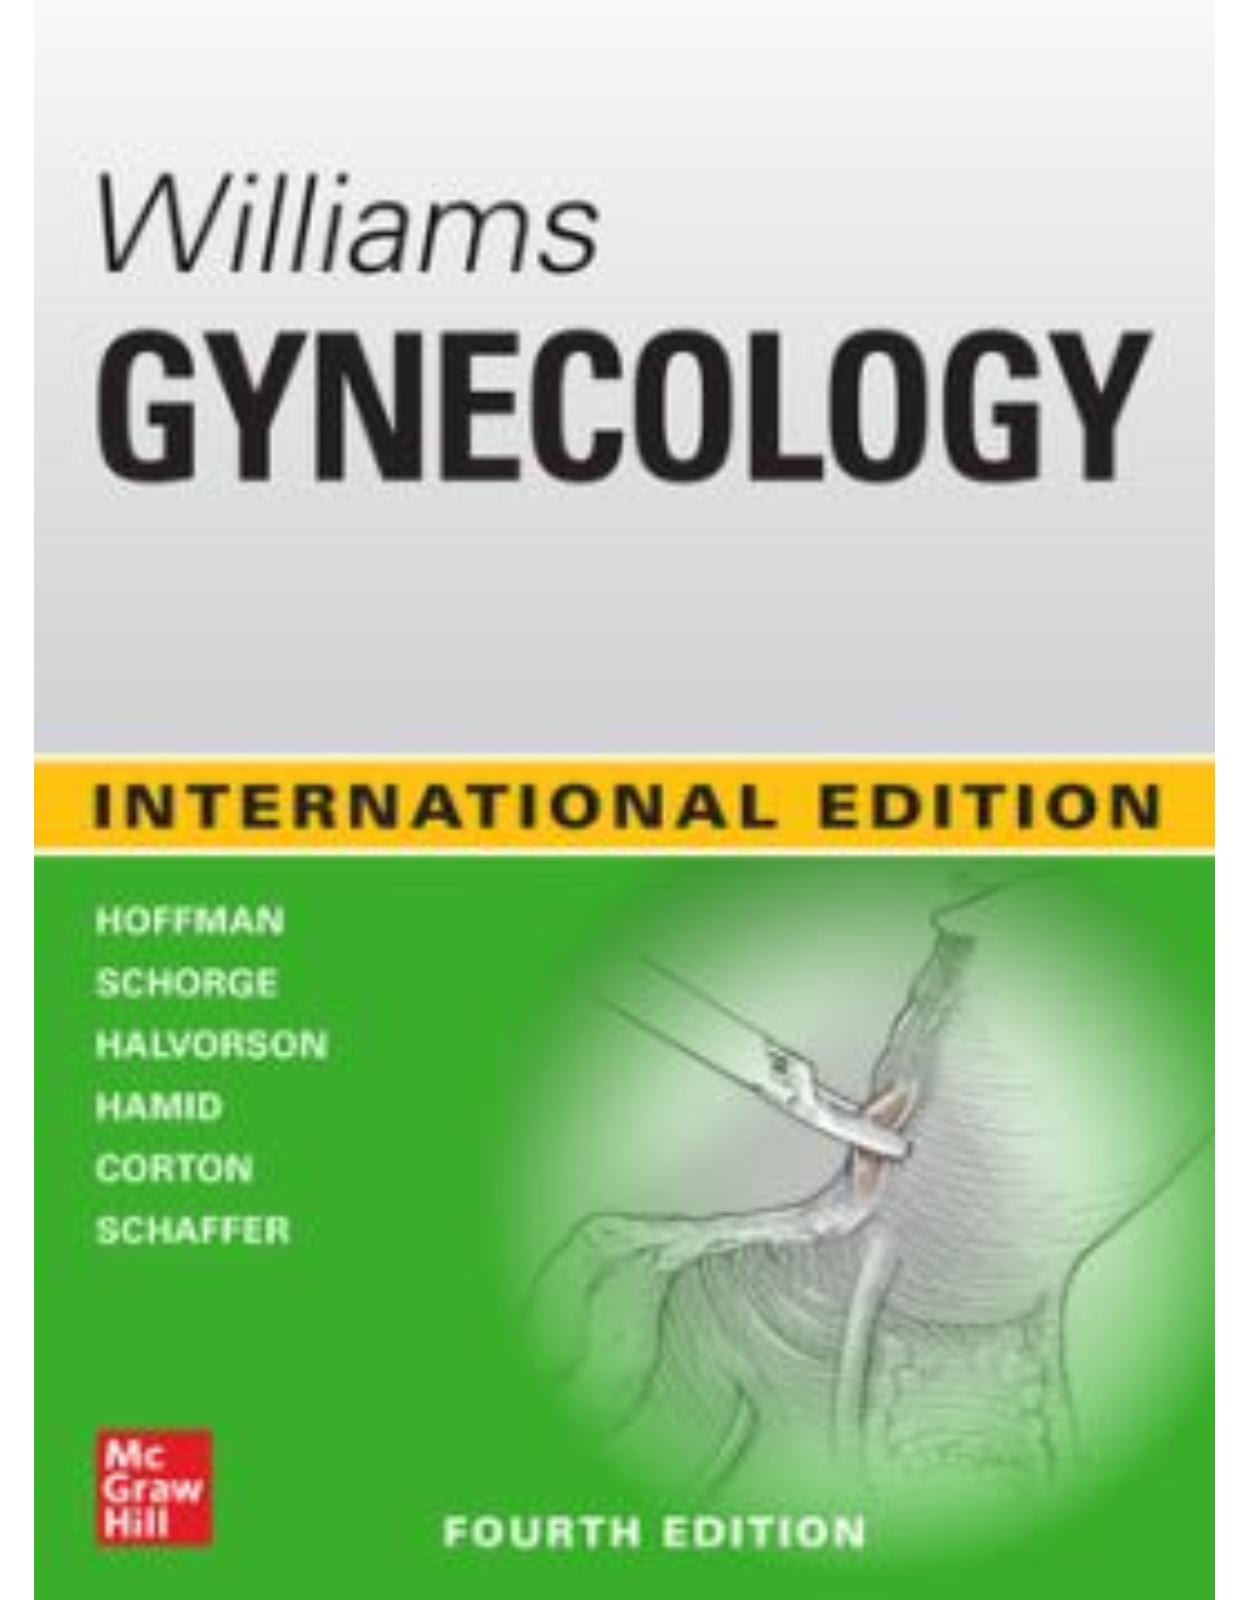 Williams Gynecology, Fourth Edition